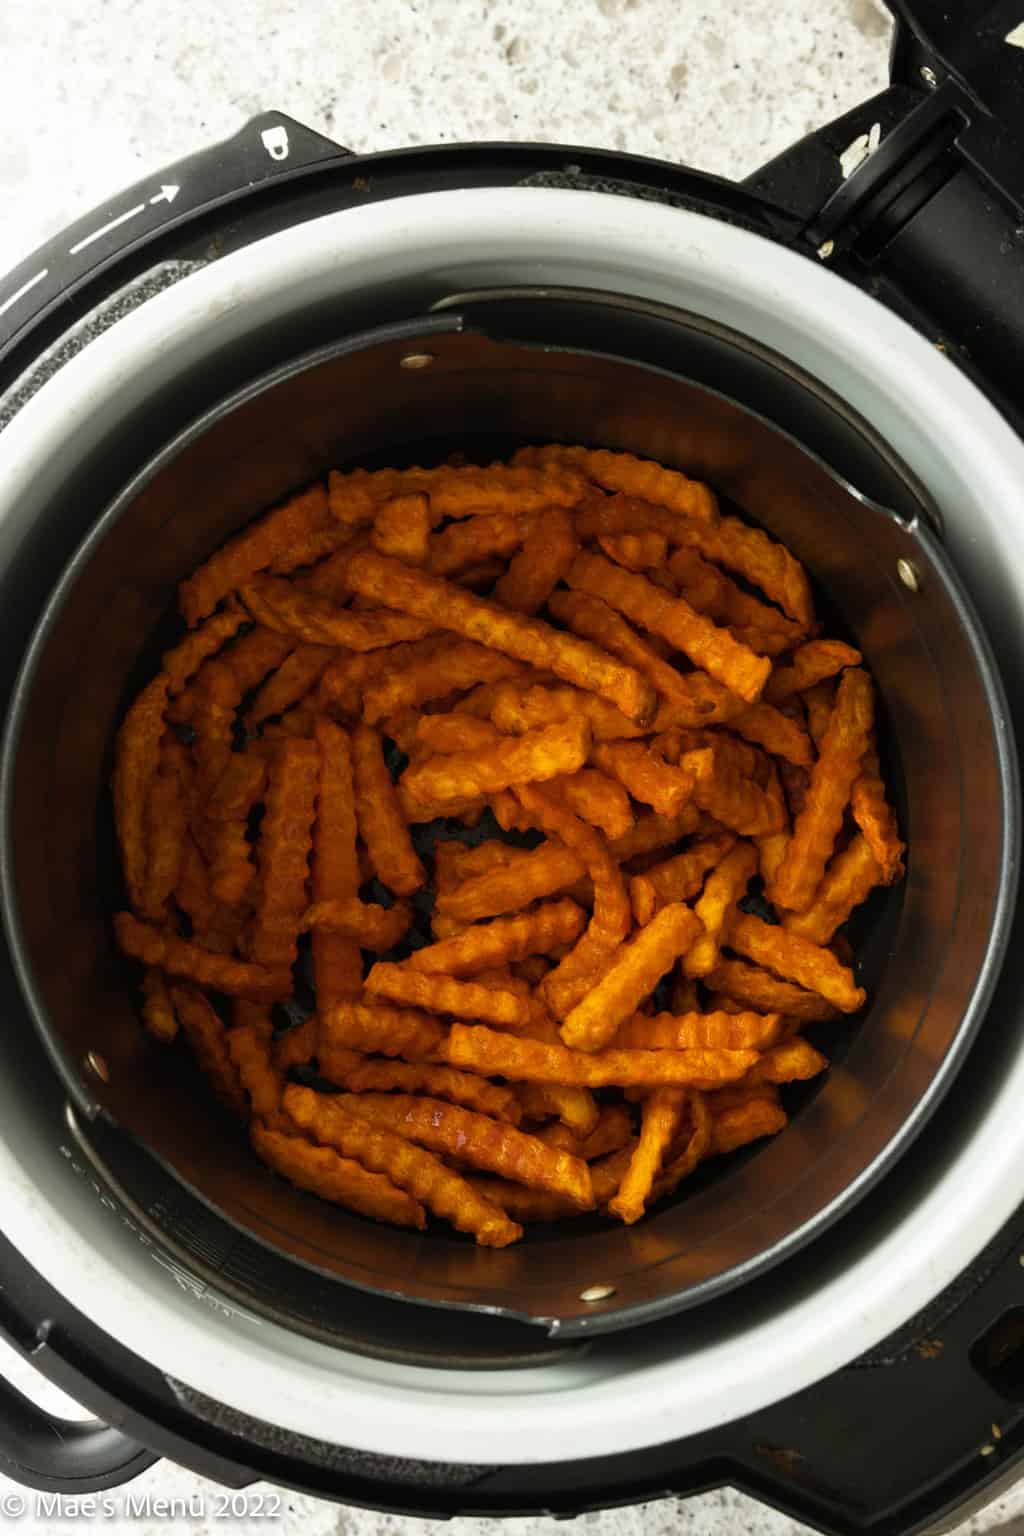 An overhead shot of a basket of sweet potato fries.